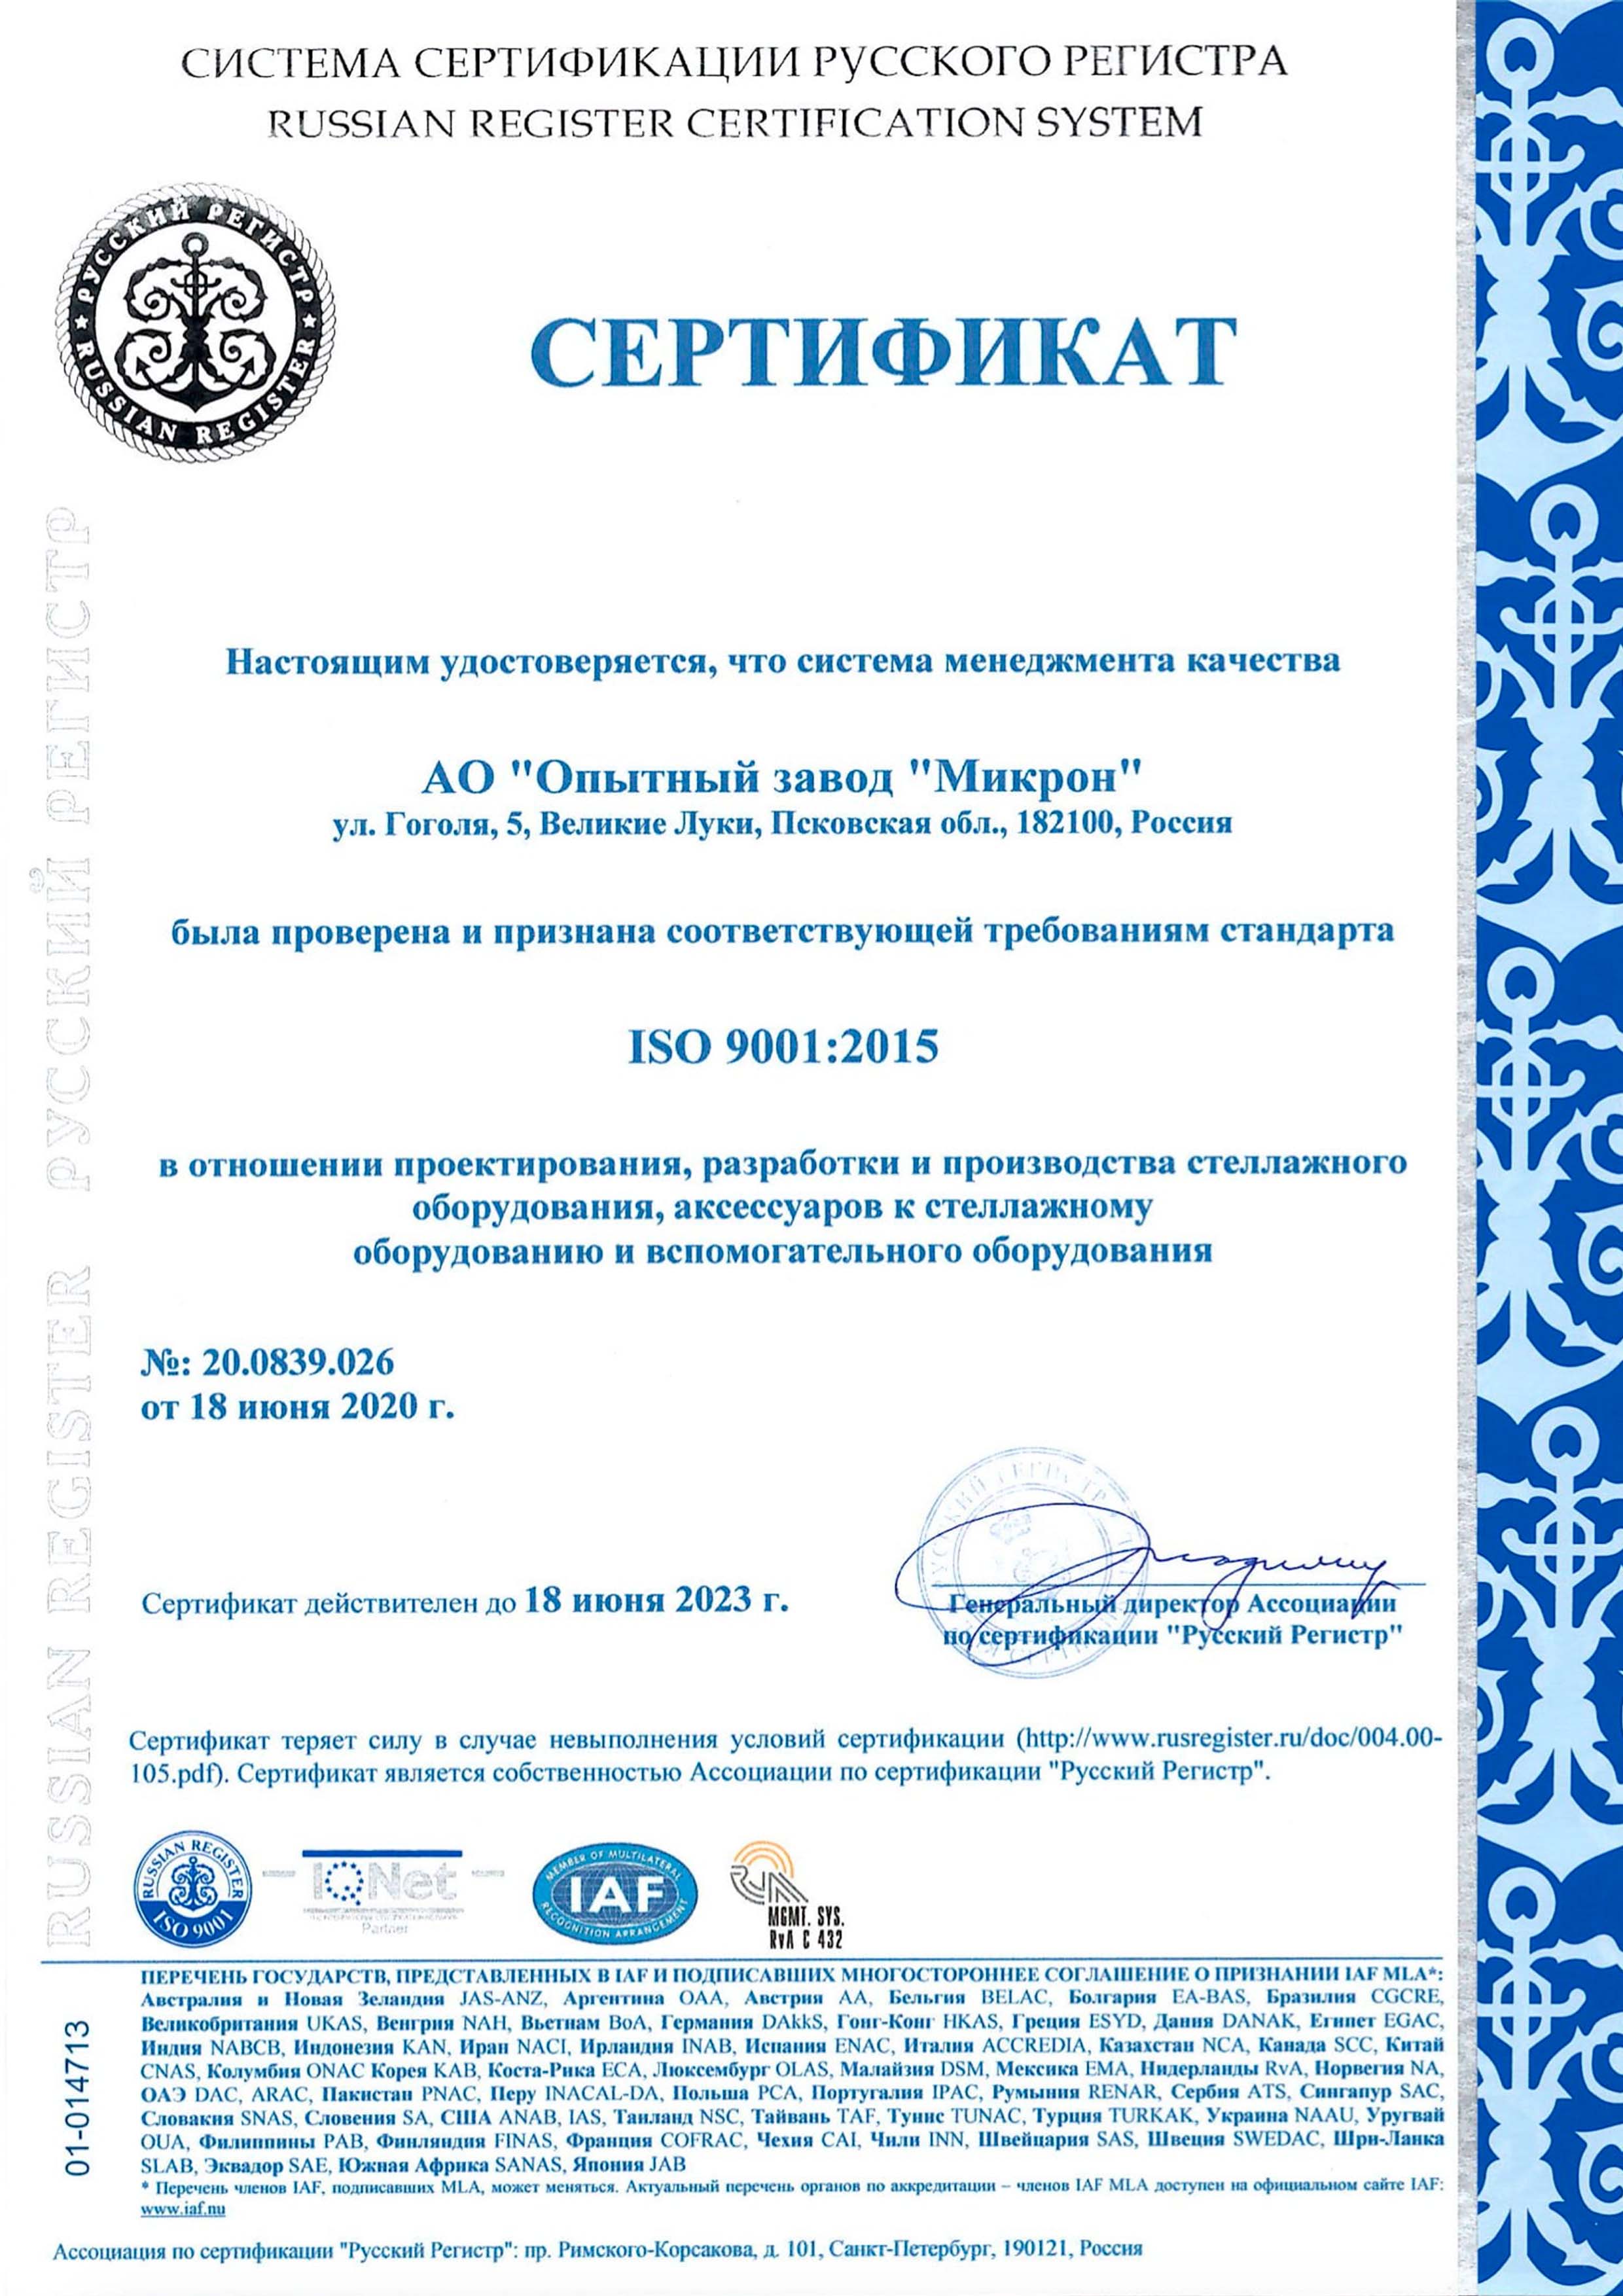 Russian Registry Certificate